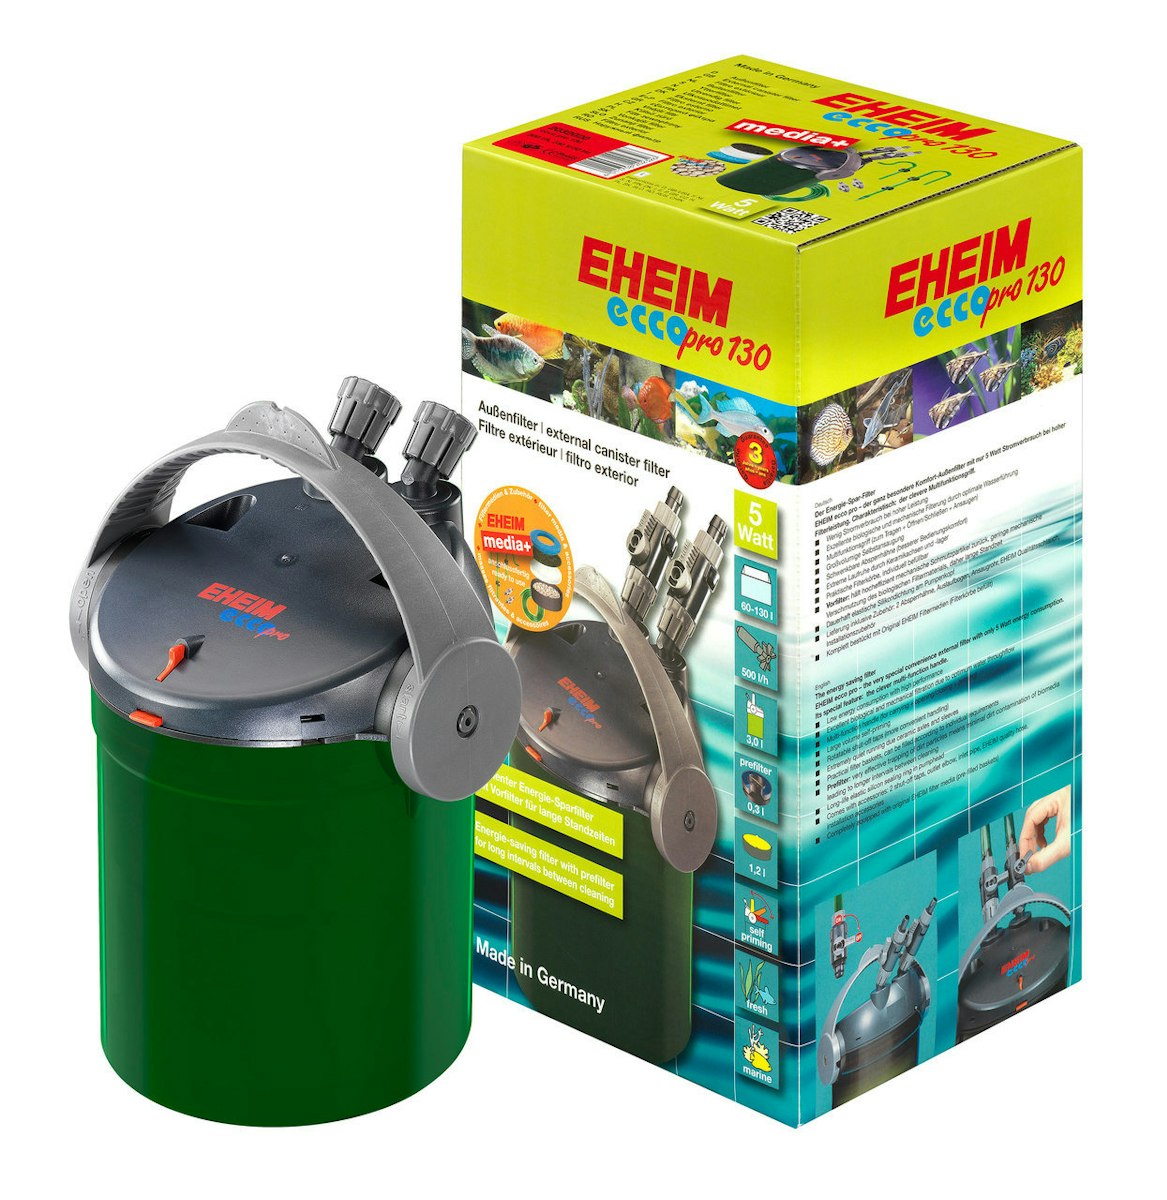 EHEIM 2032 ecco pro 130 Außenfilter mit Filtermasse von EHEIM